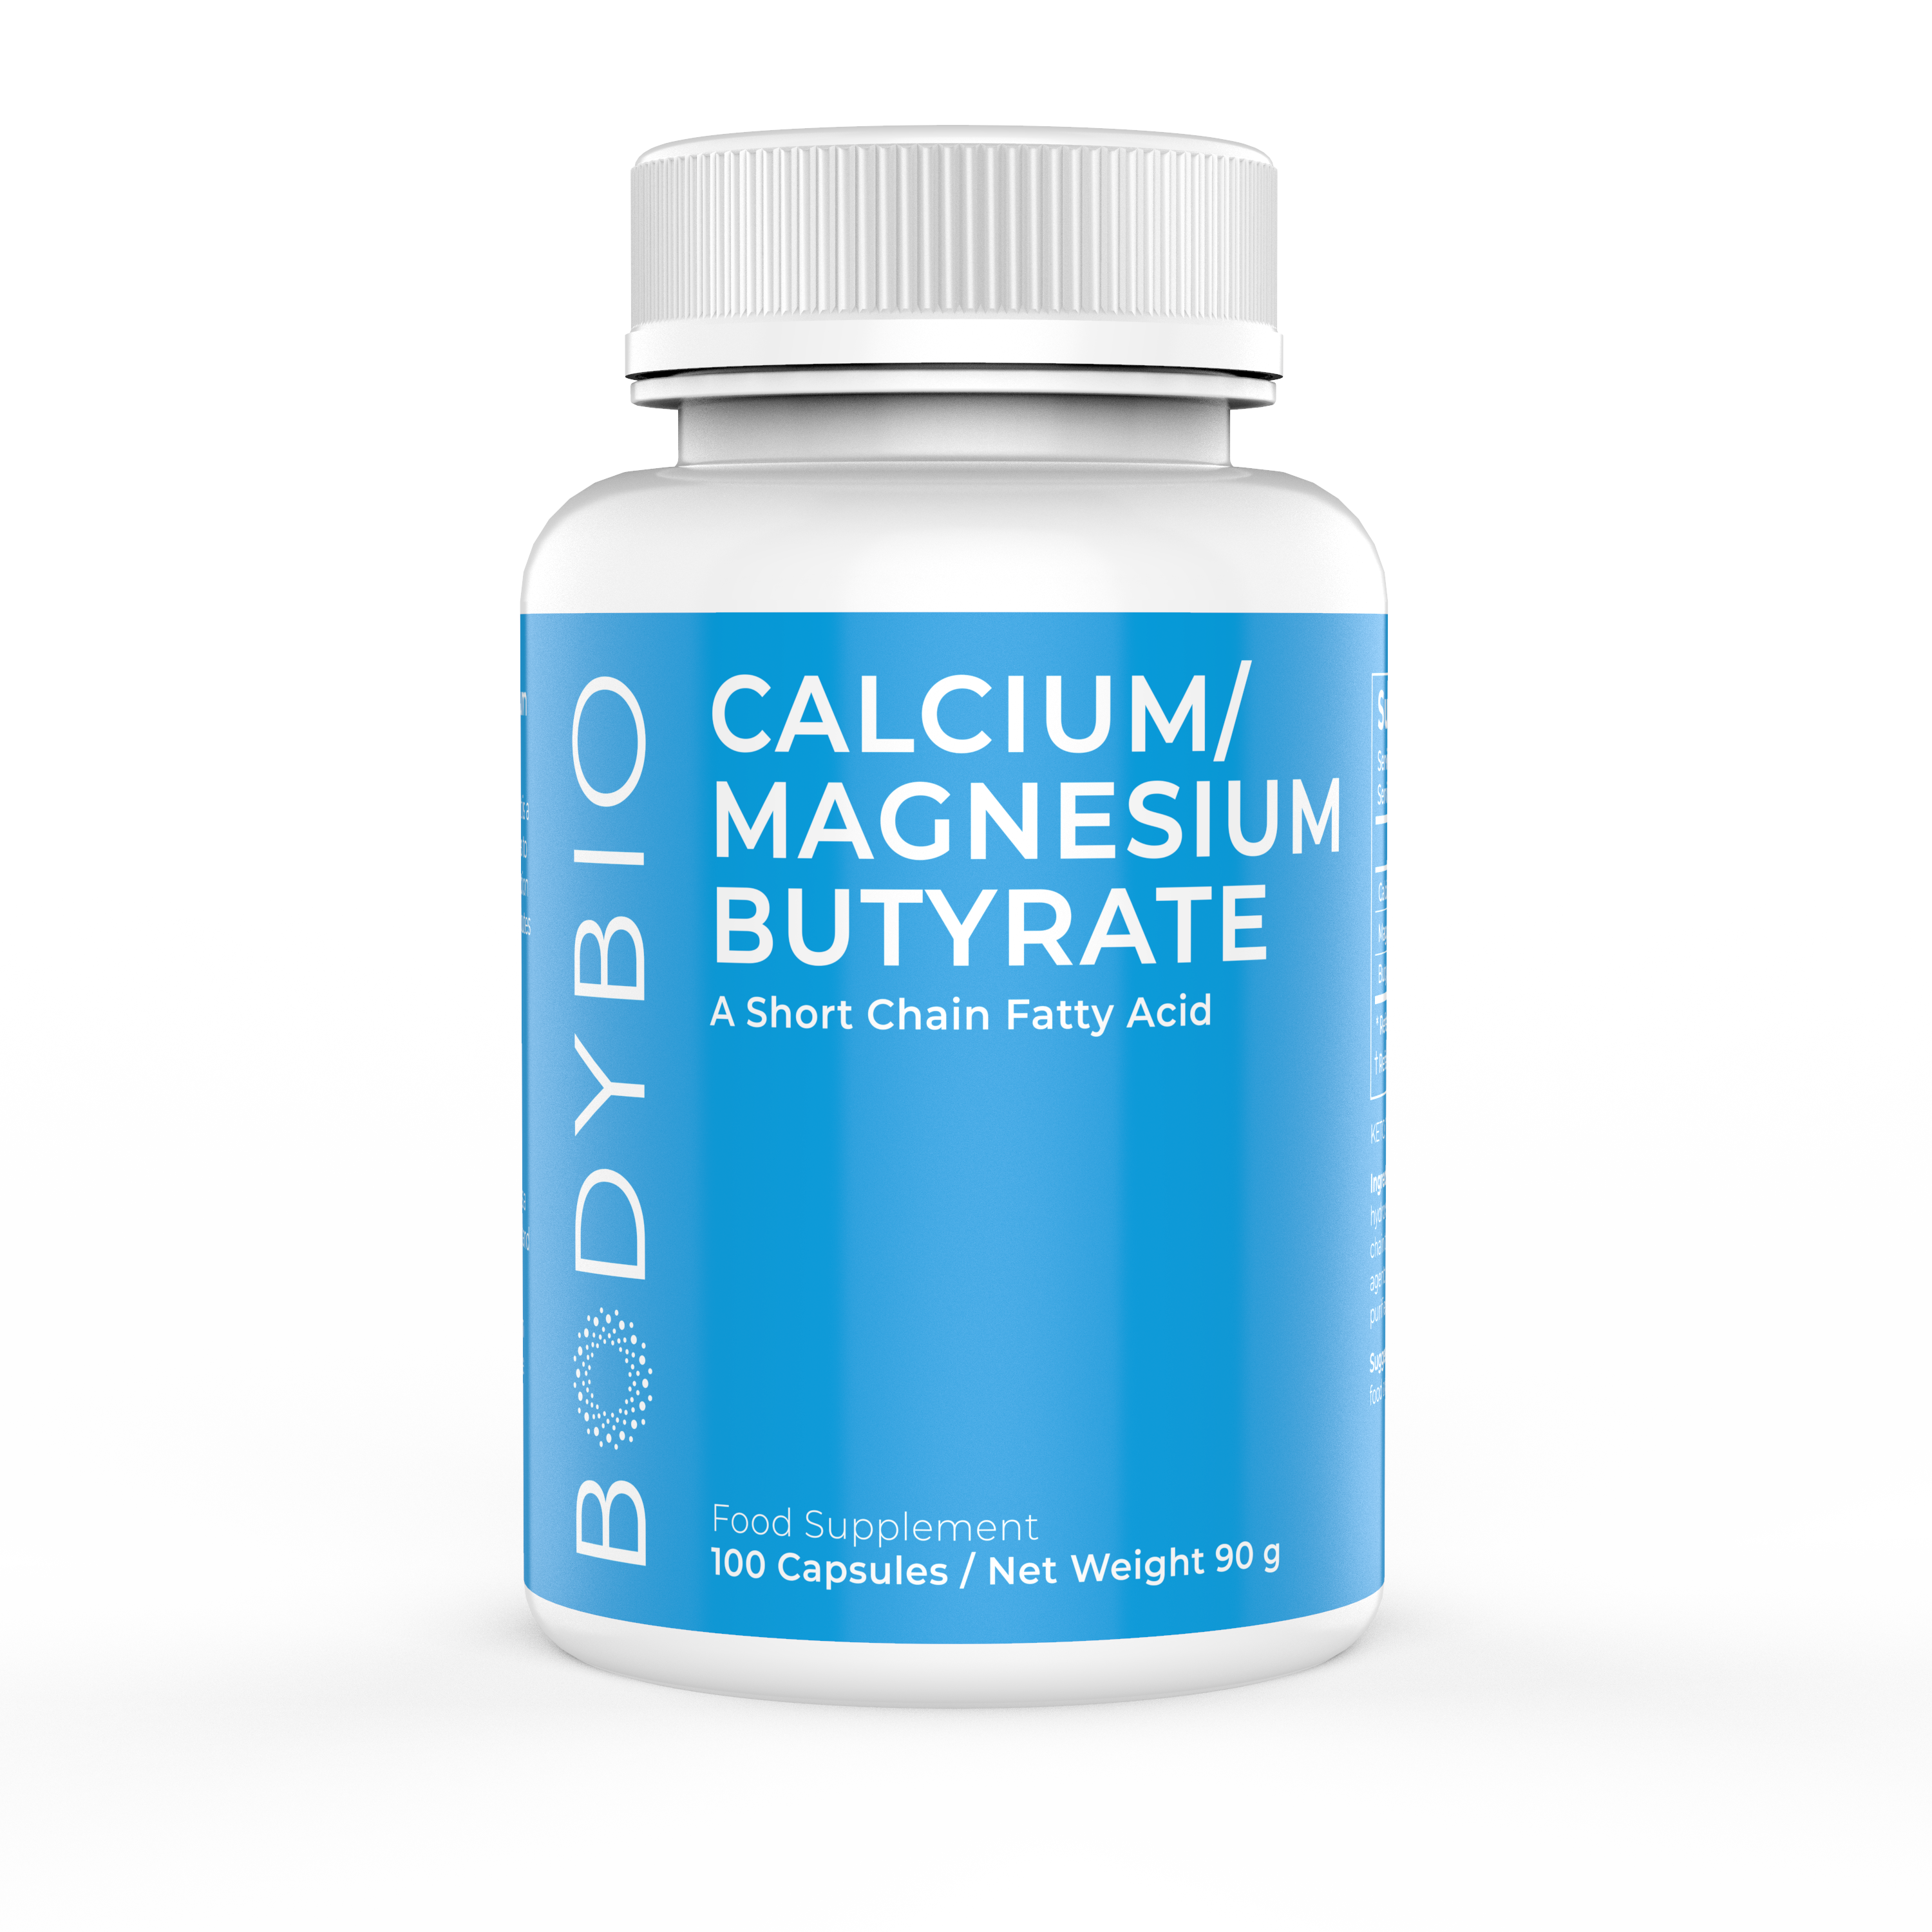 Calcium/Magnesium Butyrate 600mg - 100 Capsules | BodyBio